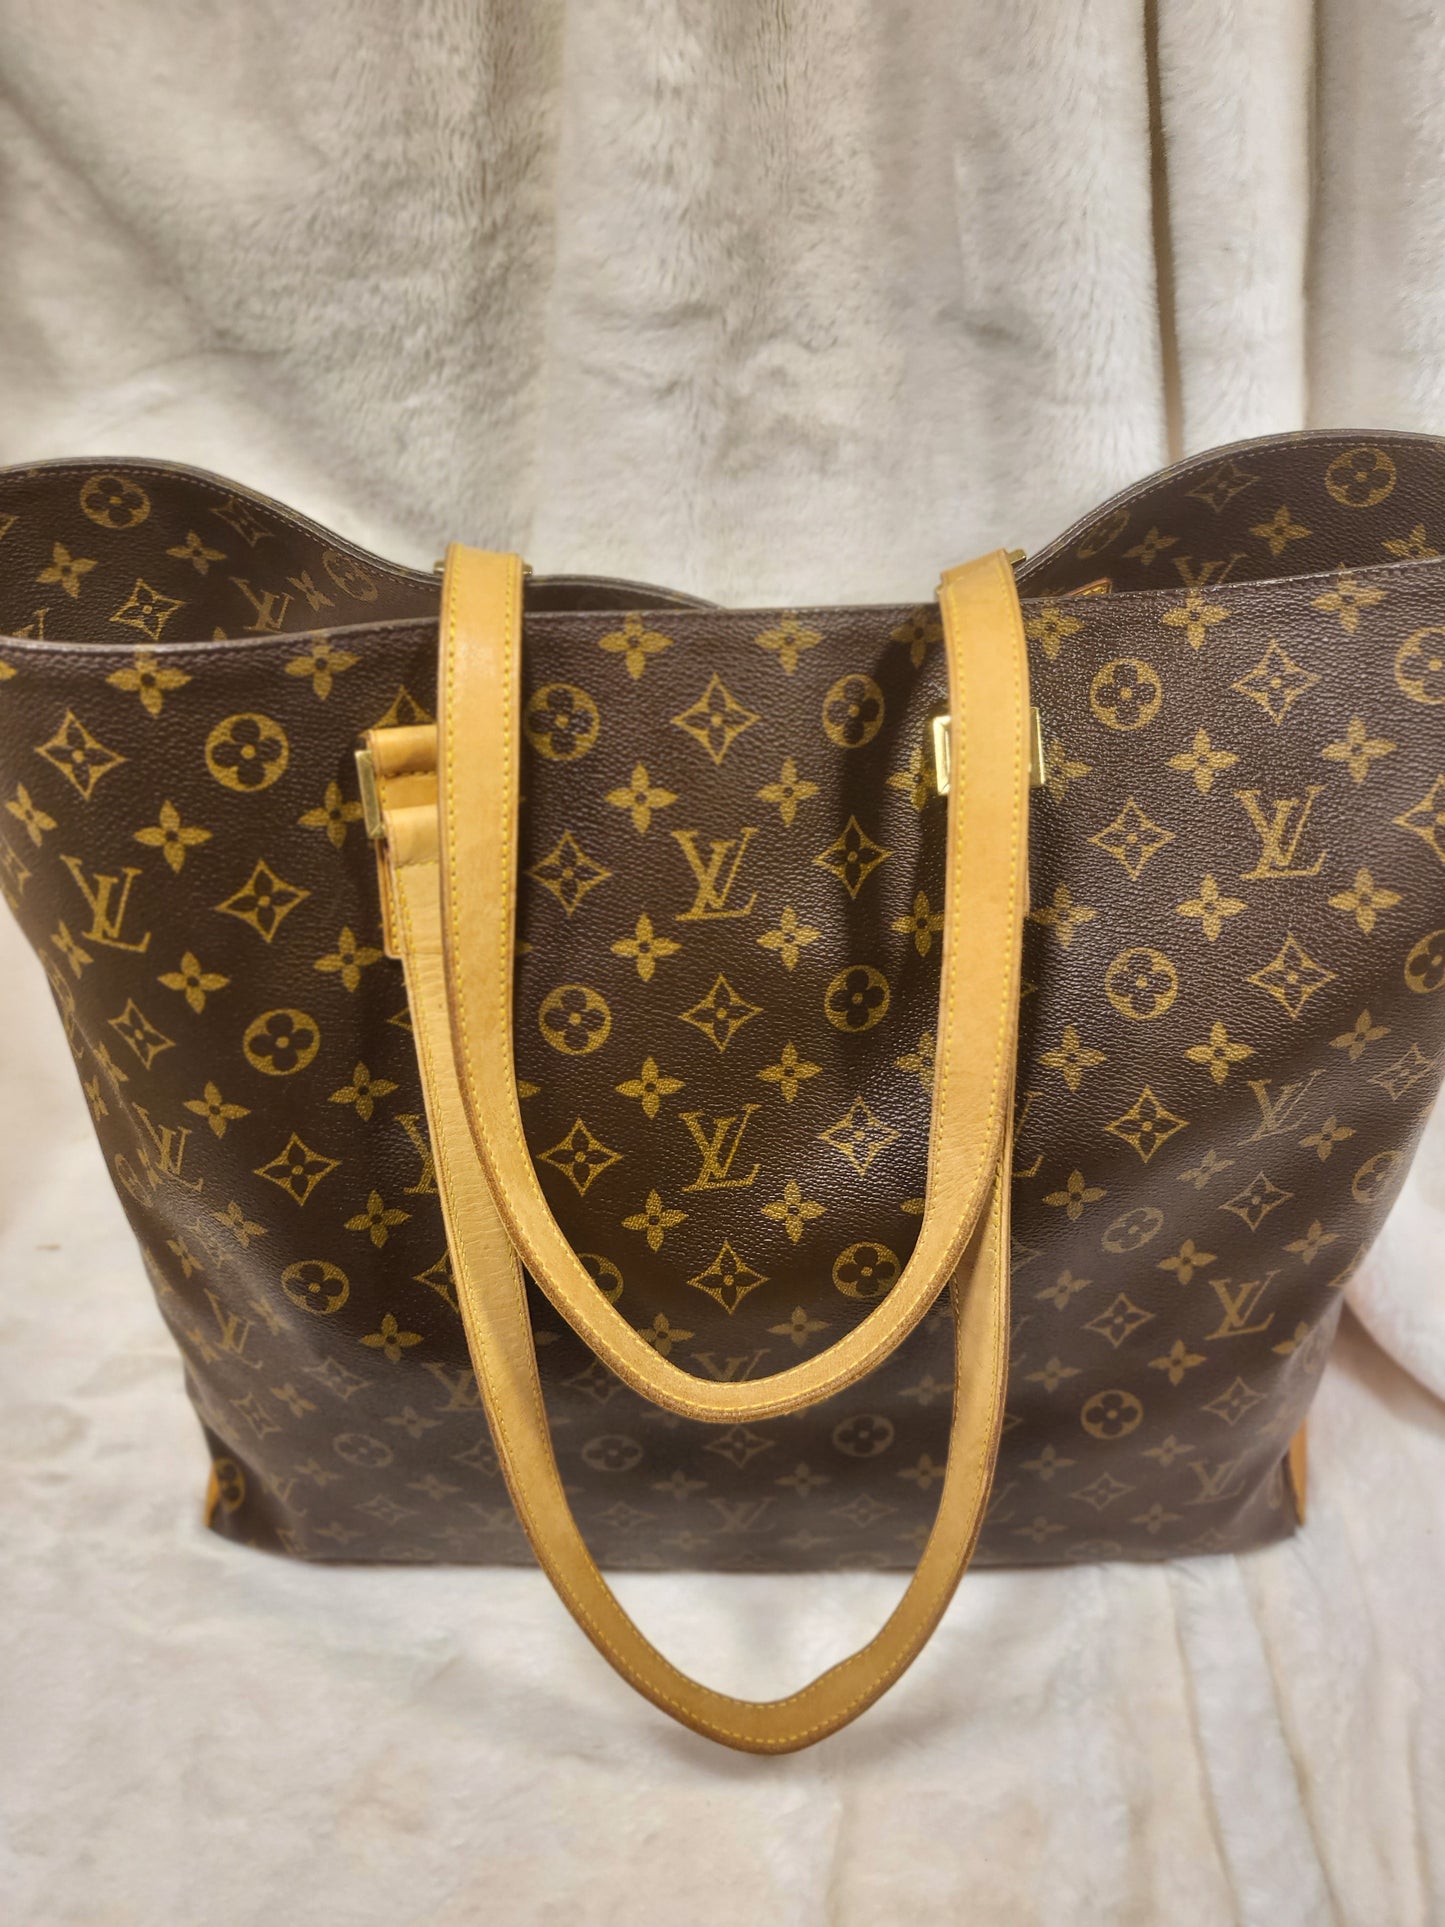 Authentic pre-owned Louis Vuitton Cabas Alto shoulder tote bag